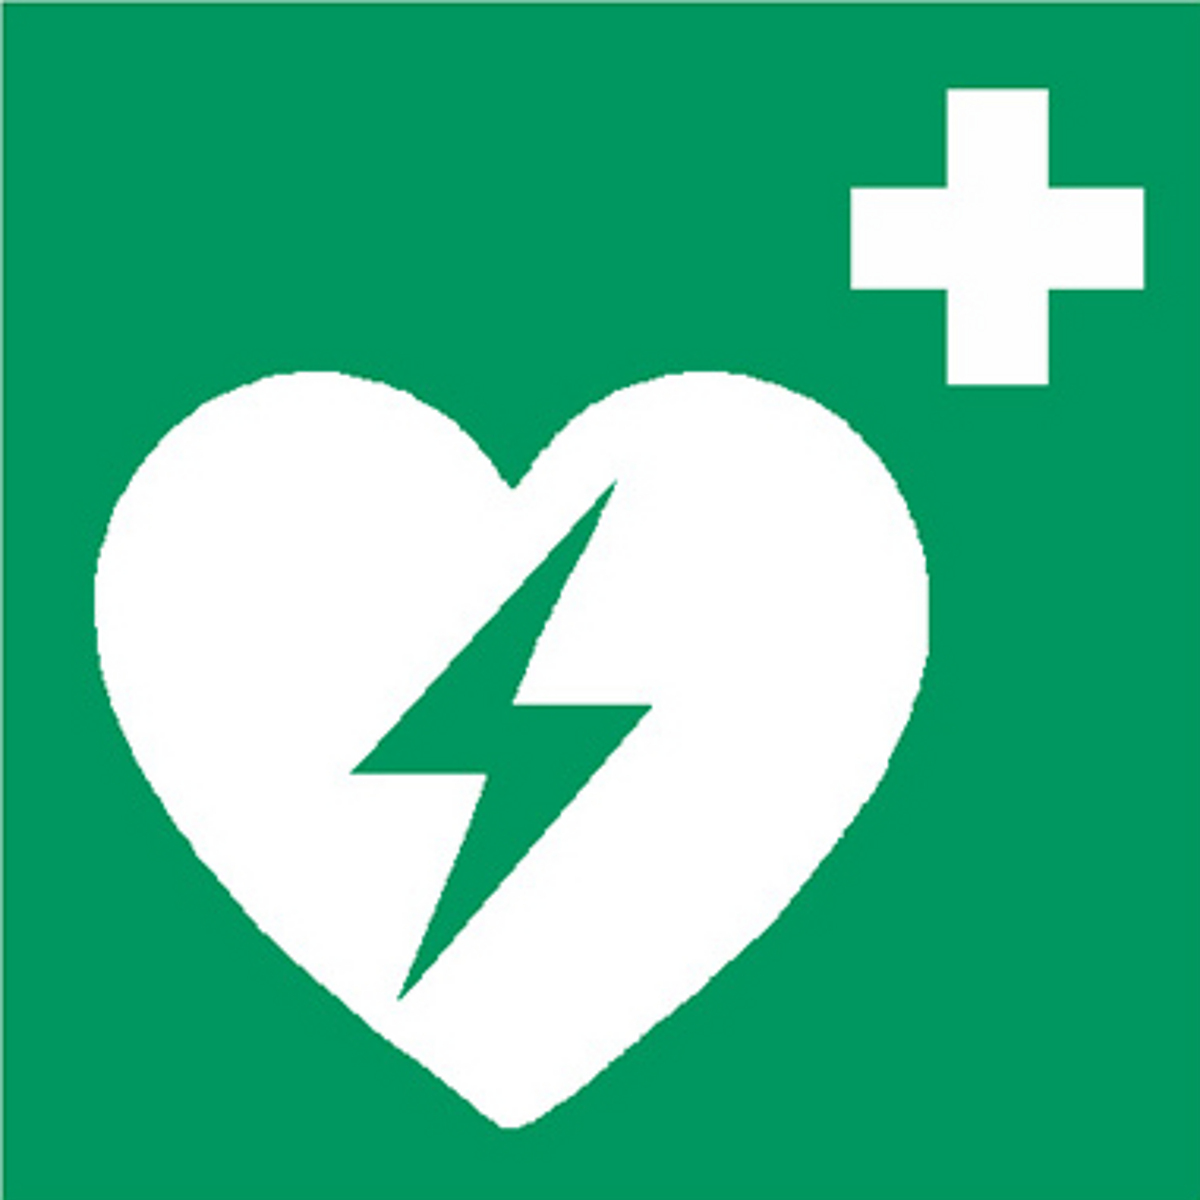 Quadratisches Logo. Weißes Herz mit Blitz in der Mitte auf grünem Hintergrund. Oben rechts ein weißes Kreuz.